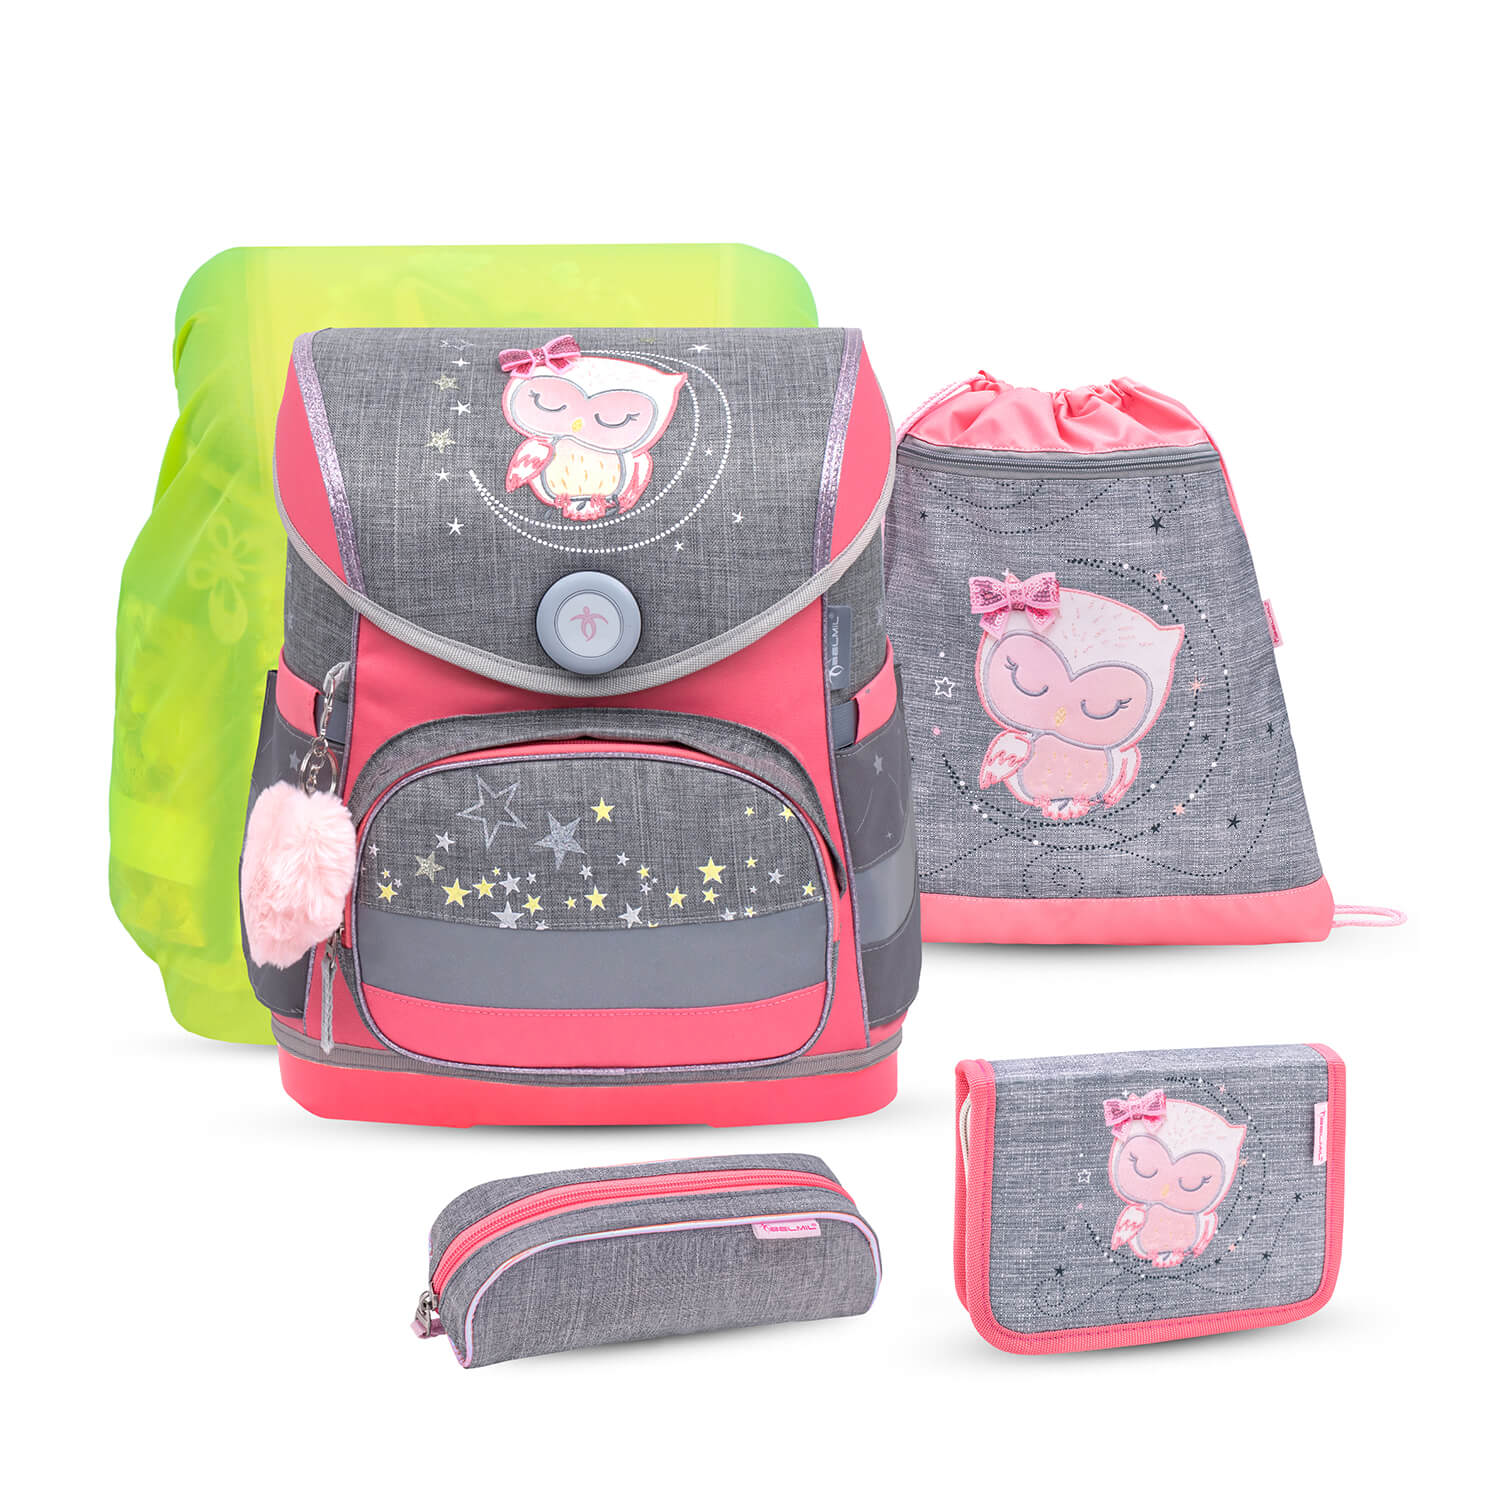 Compact Little Owl schoolbag set 5 pcs